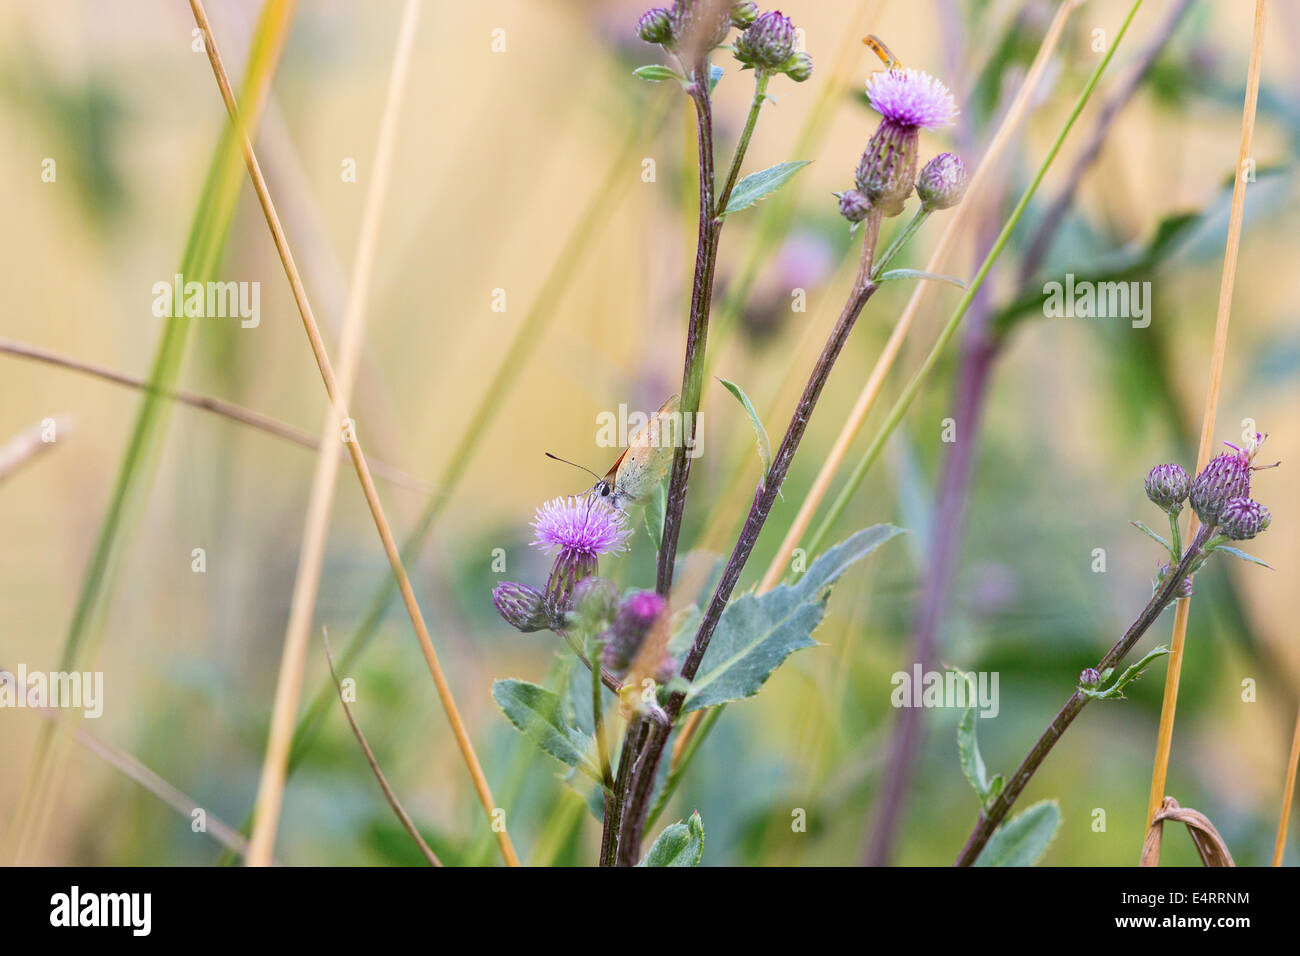 Los escasos cobre sentada sobre una flor de cardo y chupar néctar Foto de stock